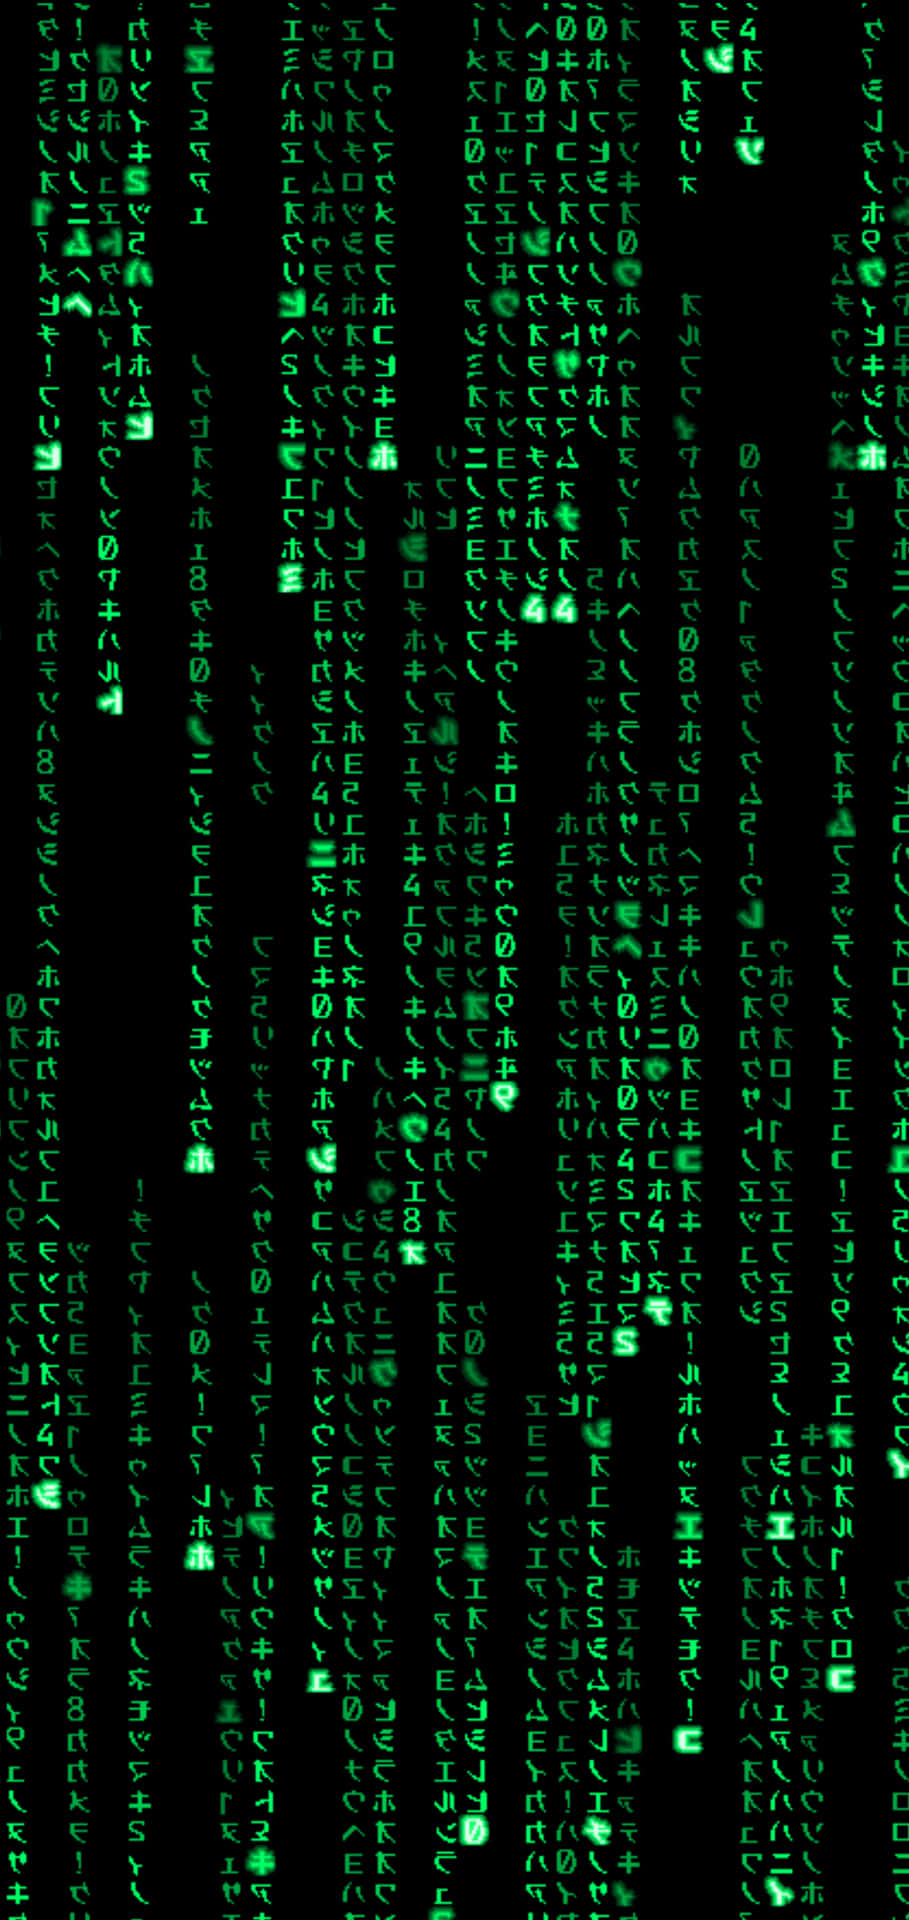 Giải thích toàn bộ phim The Matrix qua 30 câu ngắn gọn dễ hiểu